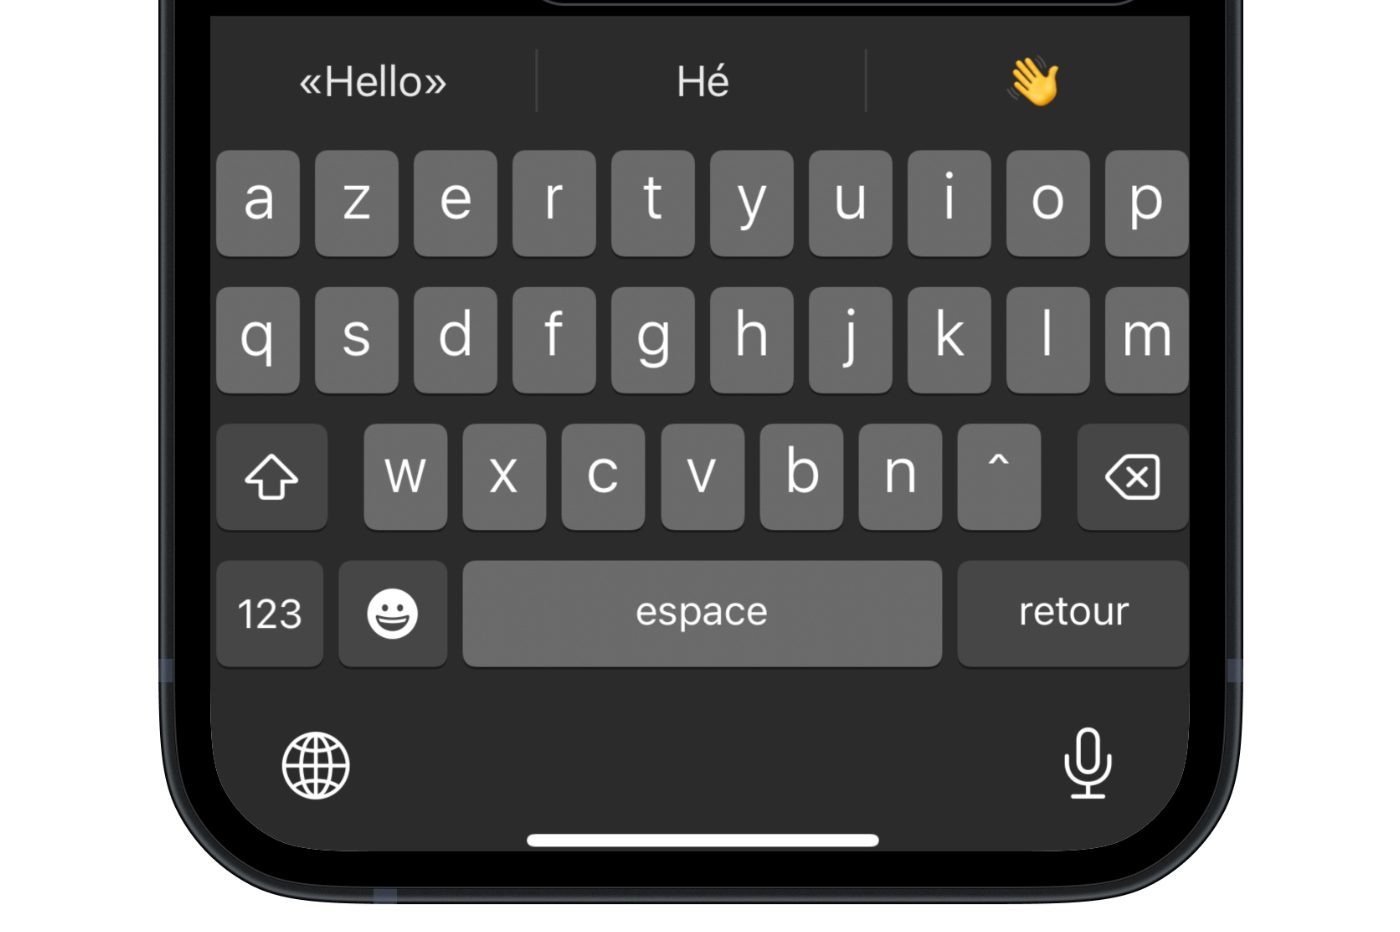 Retour haptique : comment activer les vibrations du clavier sur iOS 16